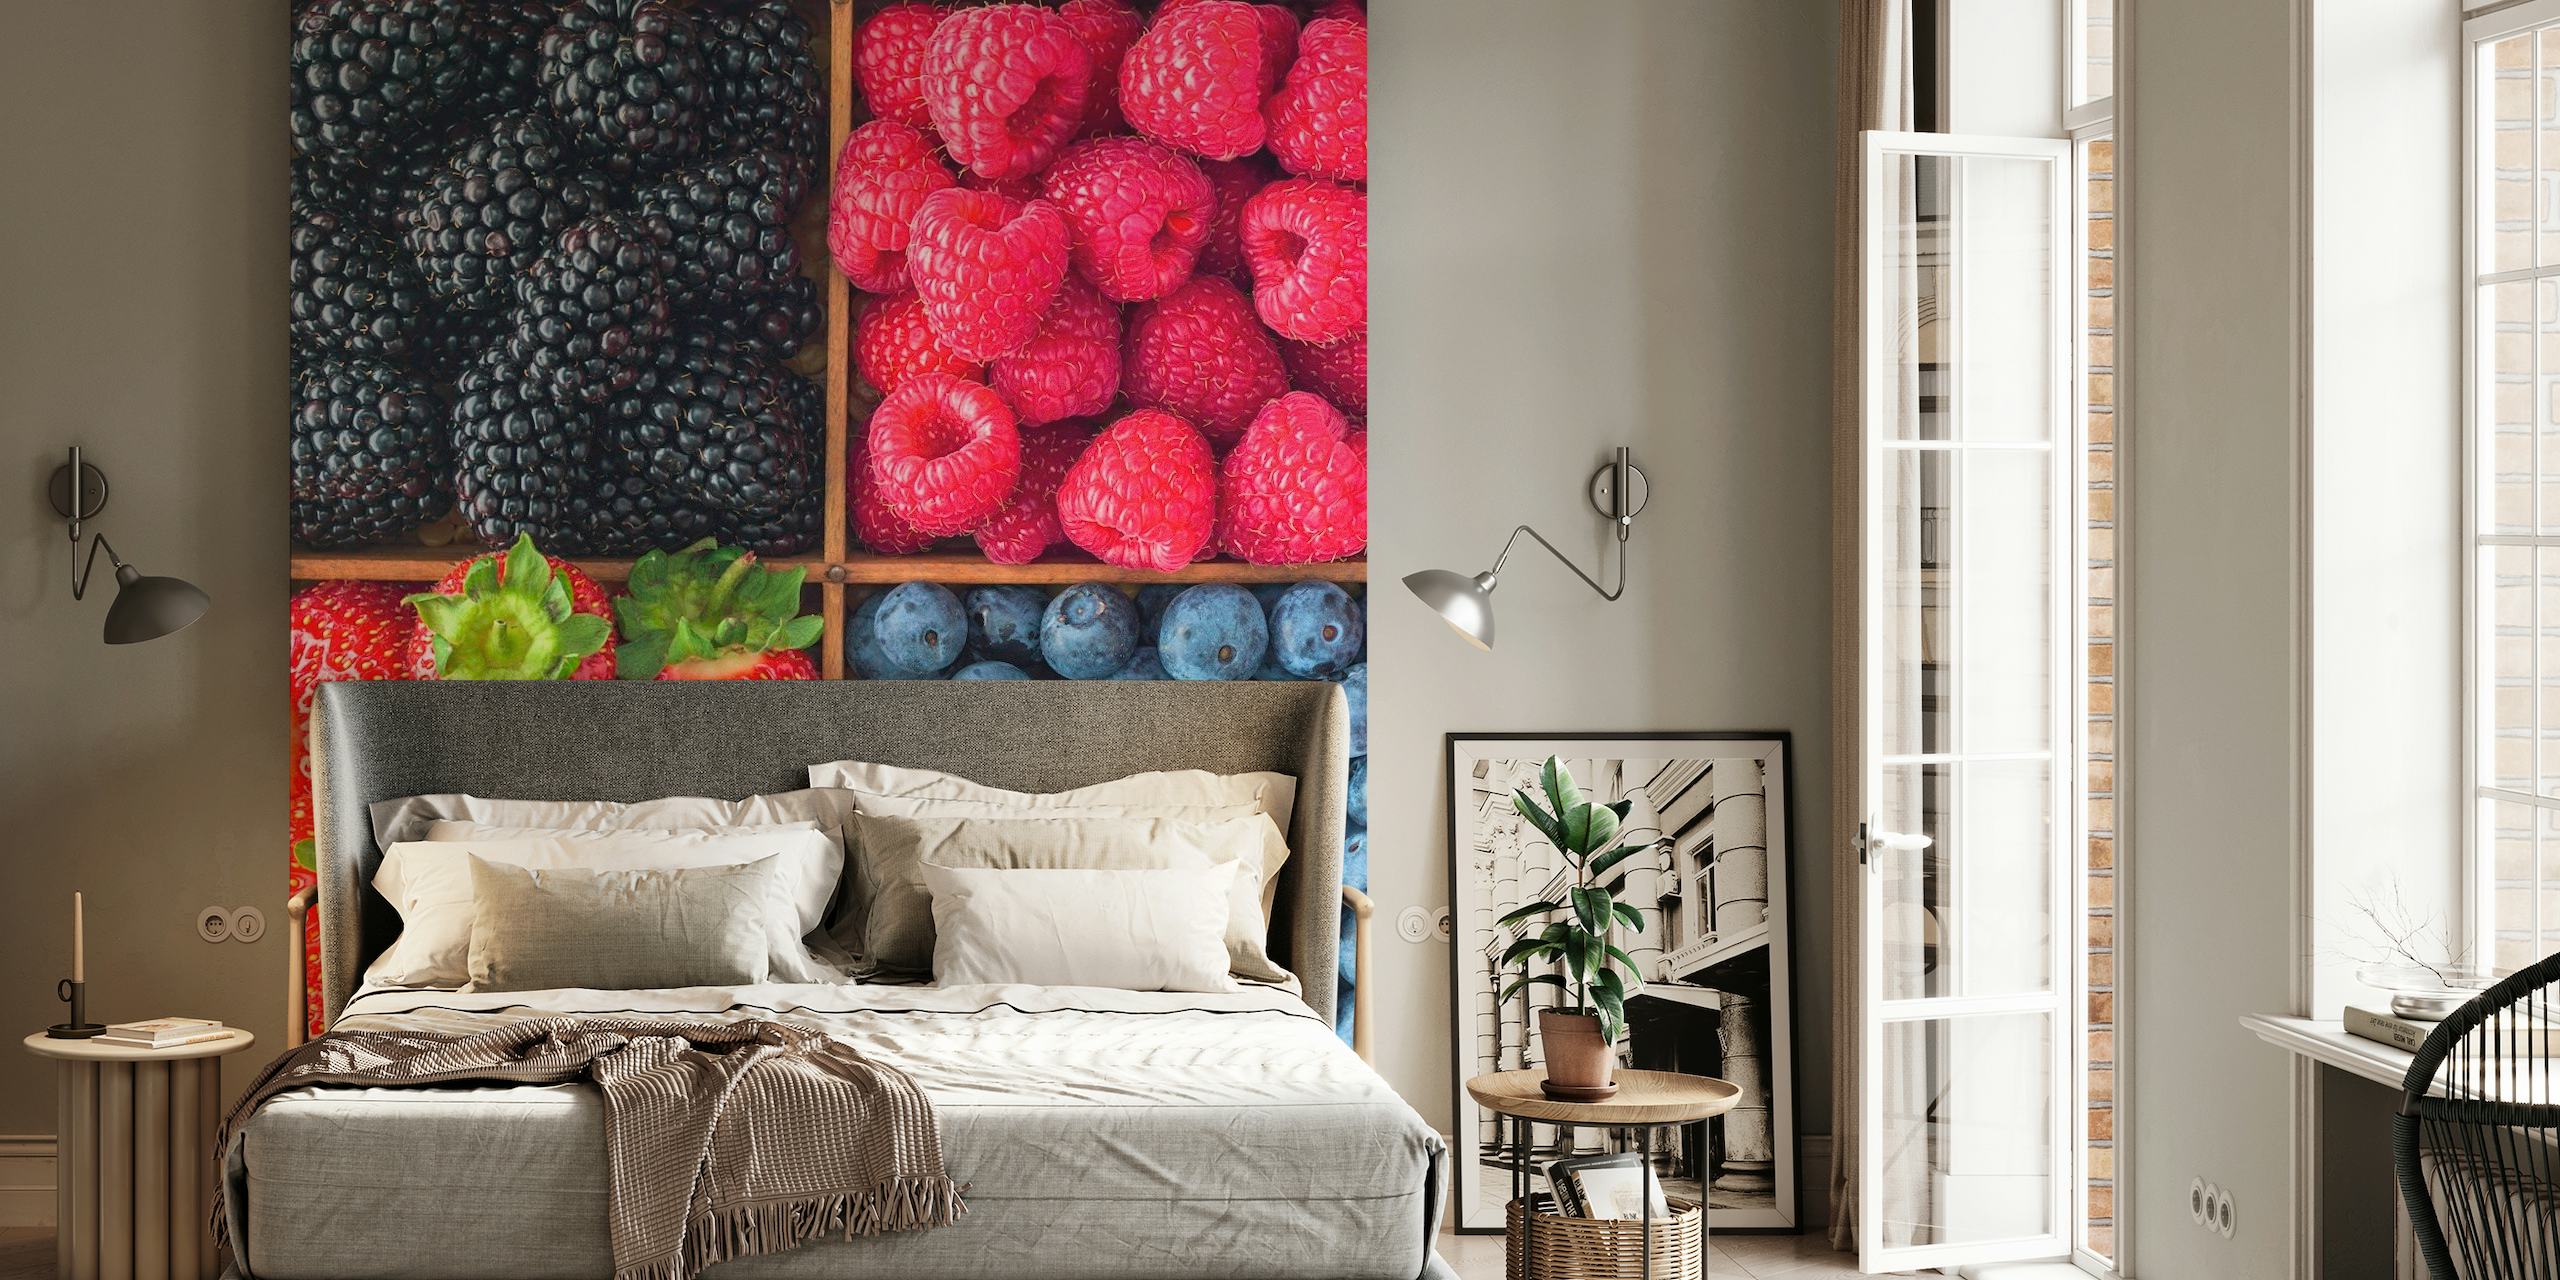 Variety of Berries wallpaper